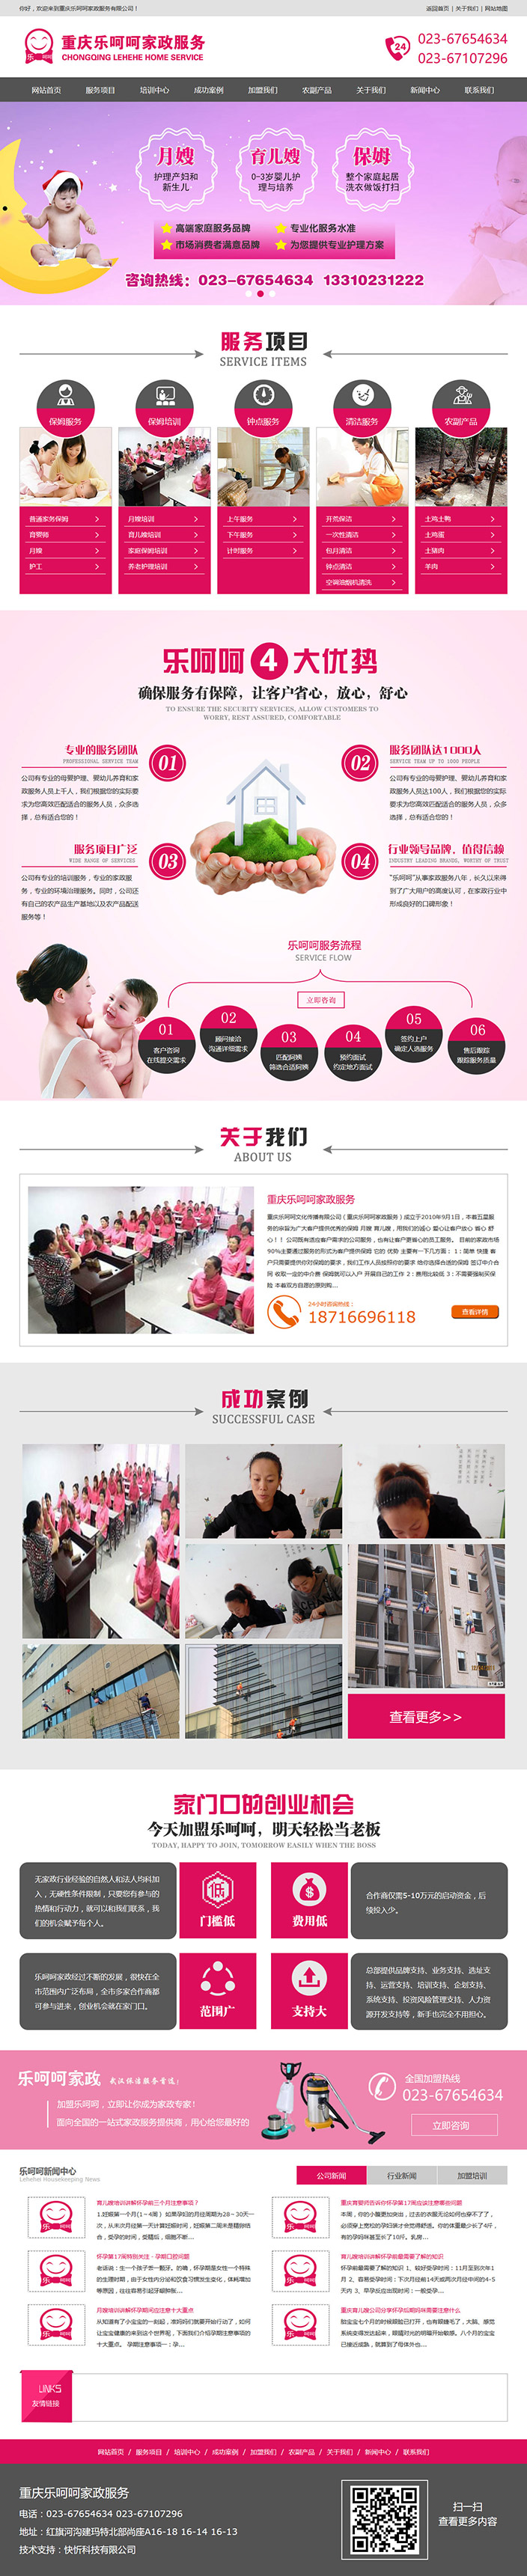 重庆乐呵呵家政服务网站建设案例